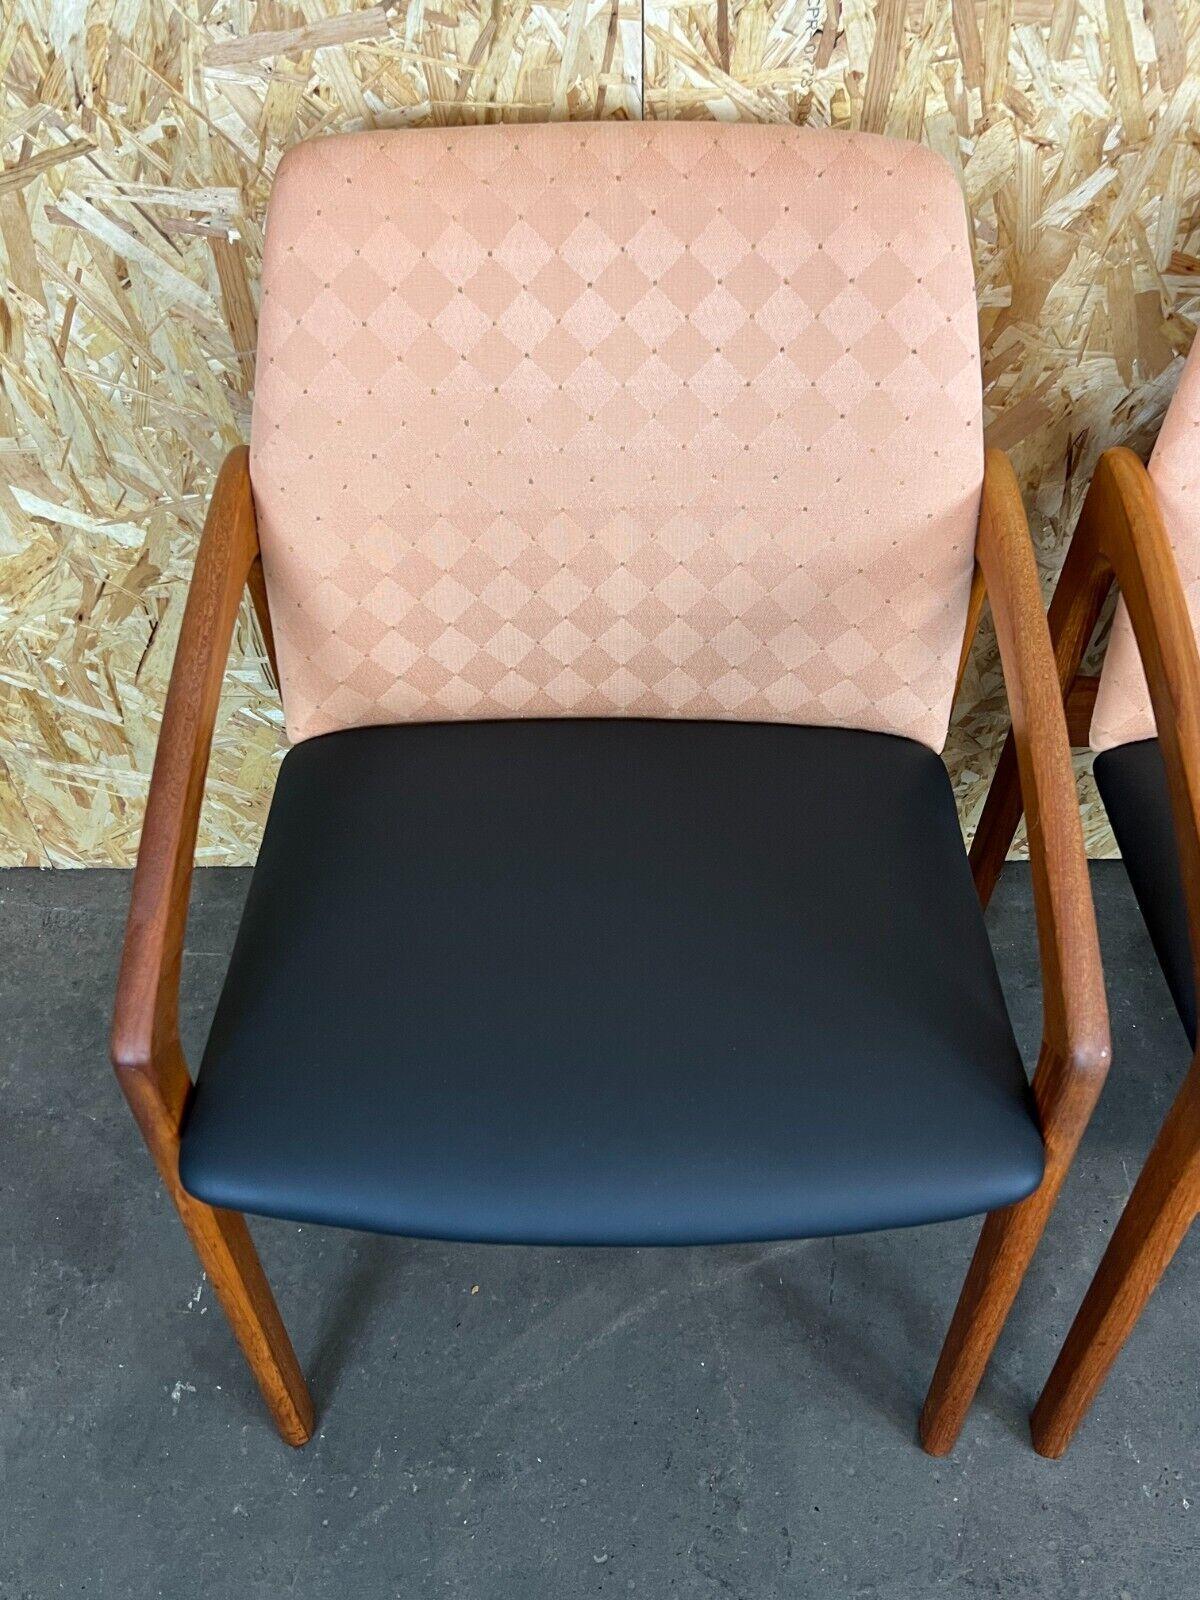 Late 20th Century 70s Teak Dining Chair Henning Kjaernulf for Korup Stolefabric Model 23 For Sale